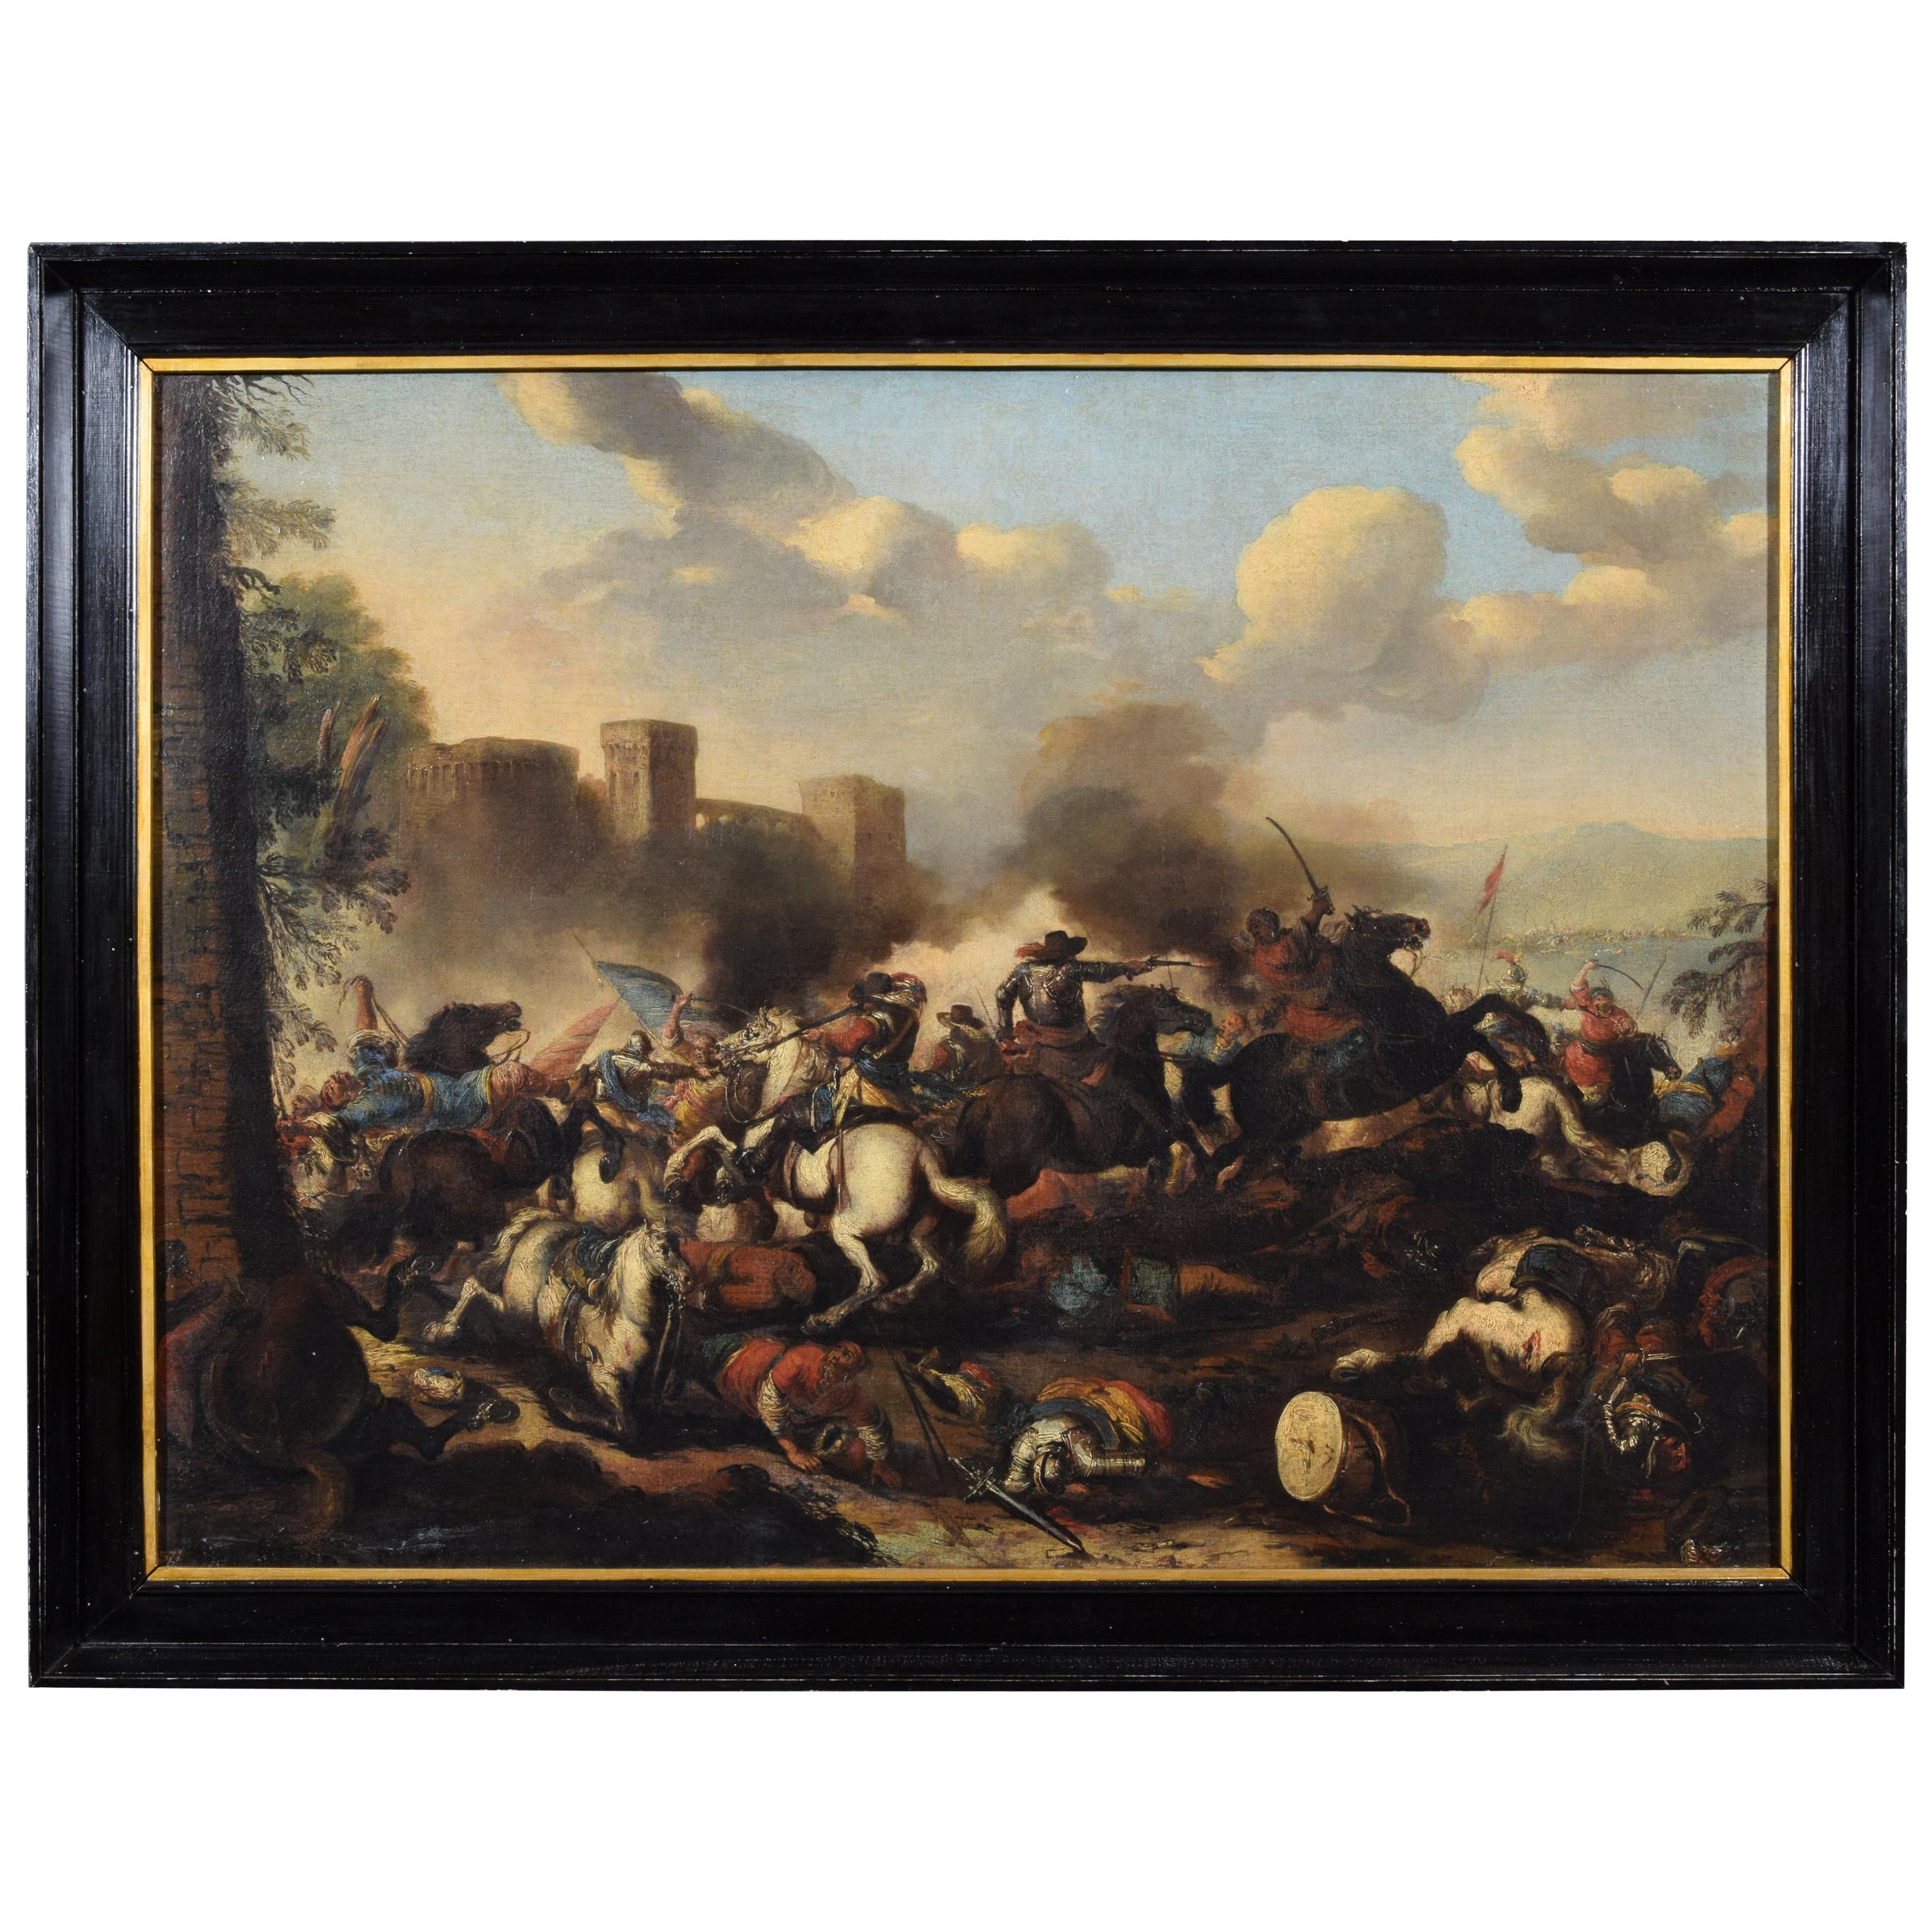 Italienisches Ölgemälde auf Leinwand mit Schlacht von Antonio Calza, 18. Jahrhundert